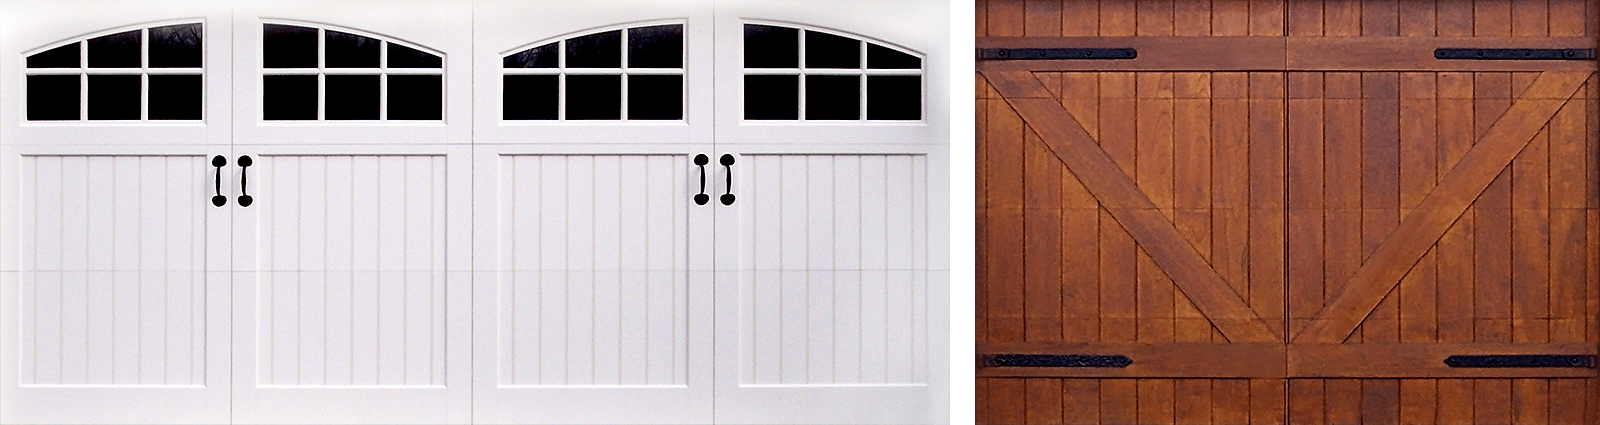 Decorative Garage Door Hardware, Garage Door Straps And Handles